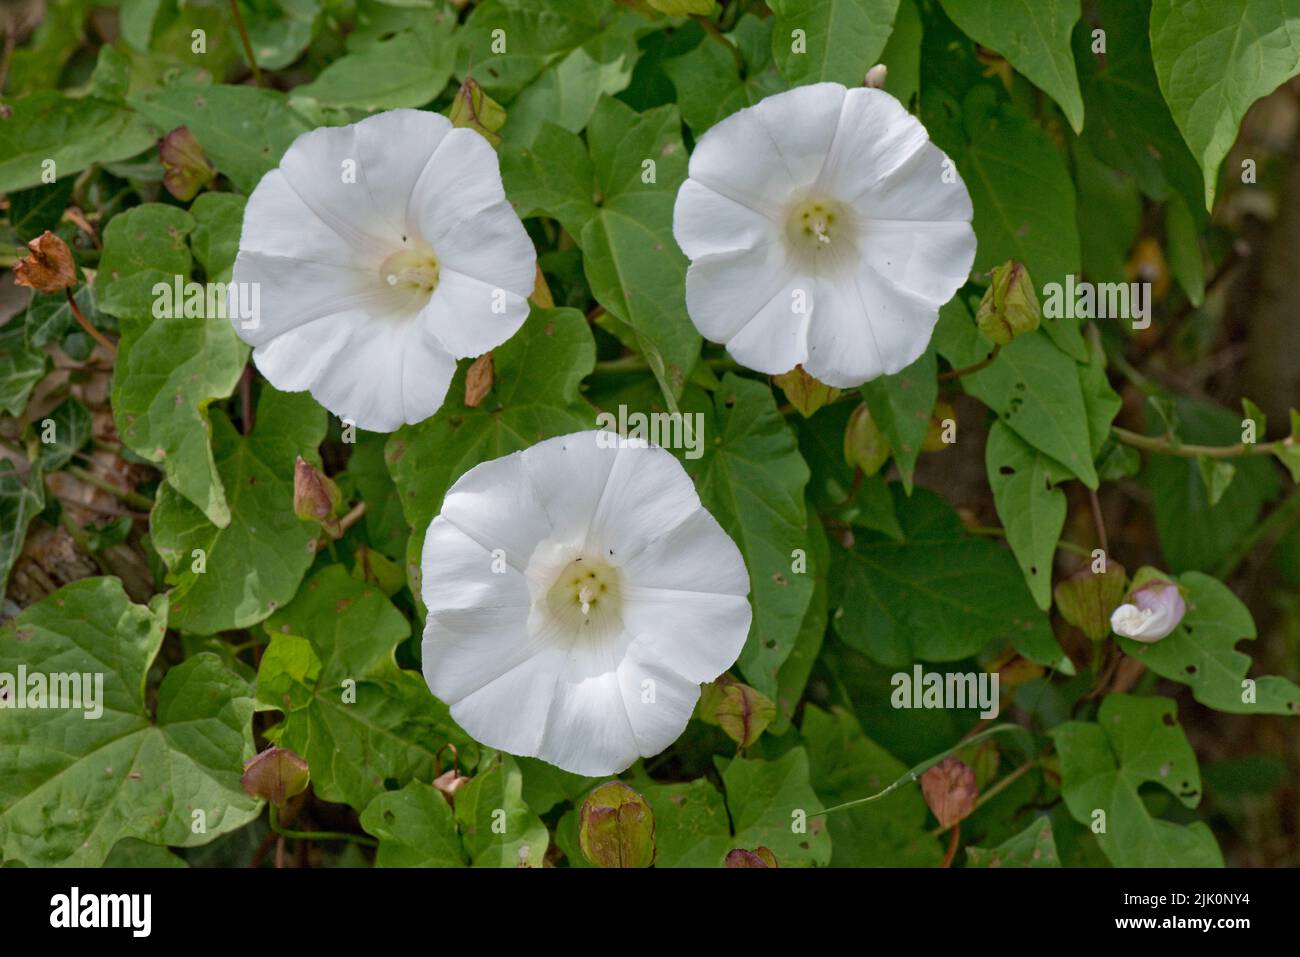 Bindweed grande o del sepium del sepium del sepium del sepium del sepium del sepium blanco, flor entre las hojas de una hierba que sube, Berkshire, julio Foto de stock